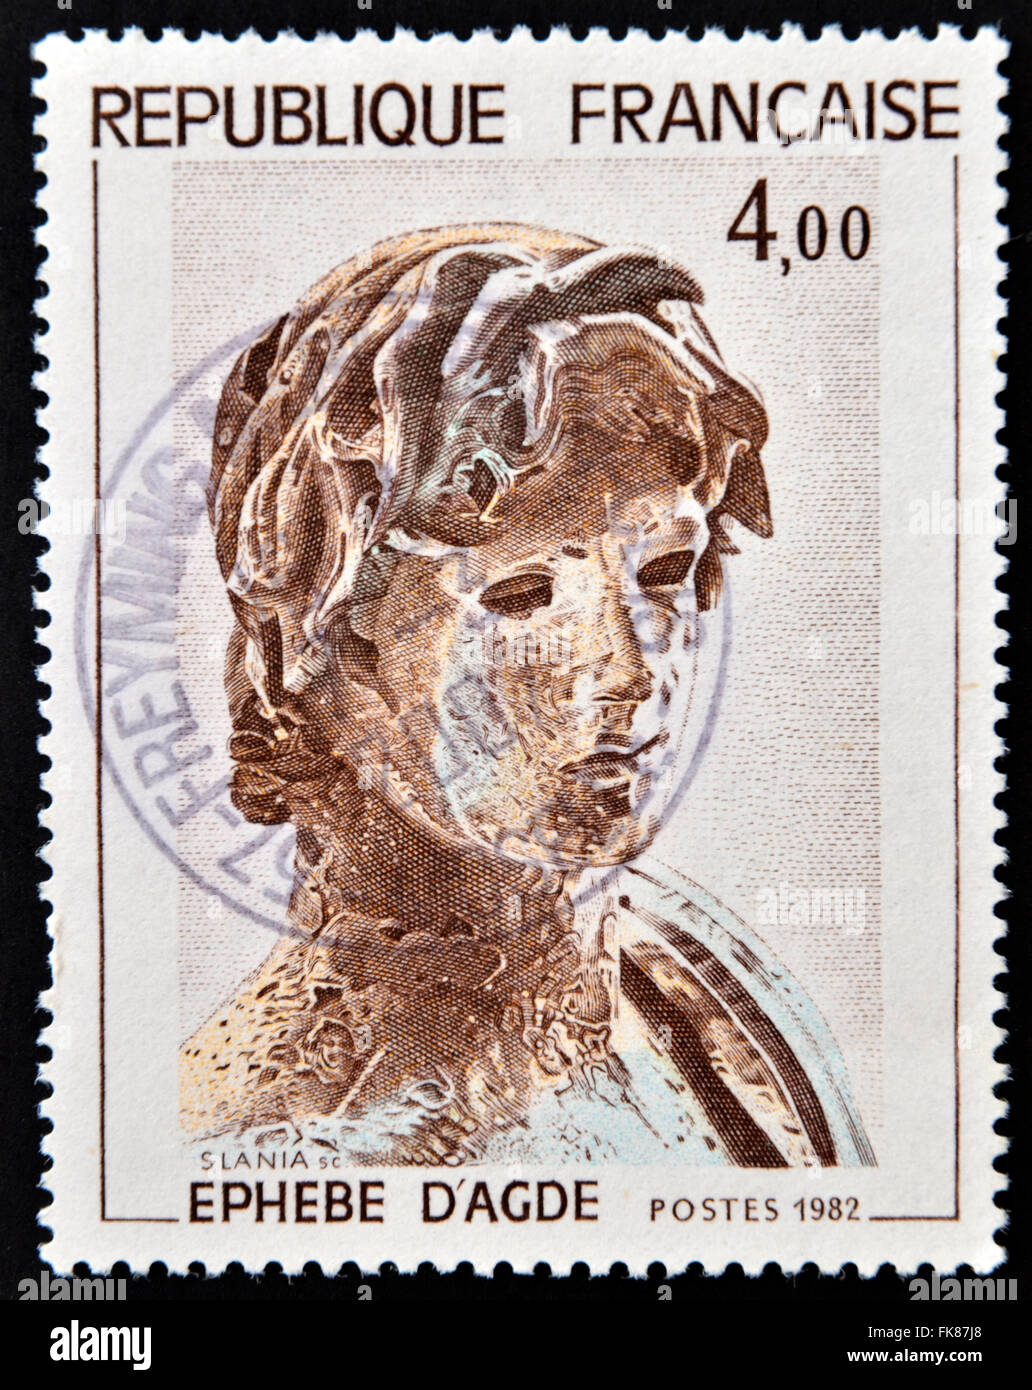 FRANCE - VERS 1982 : un timbre imprimé en France montre jeune soldat grec Hellenic, Sculpture, Agude, vers 1982 Banque D'Images